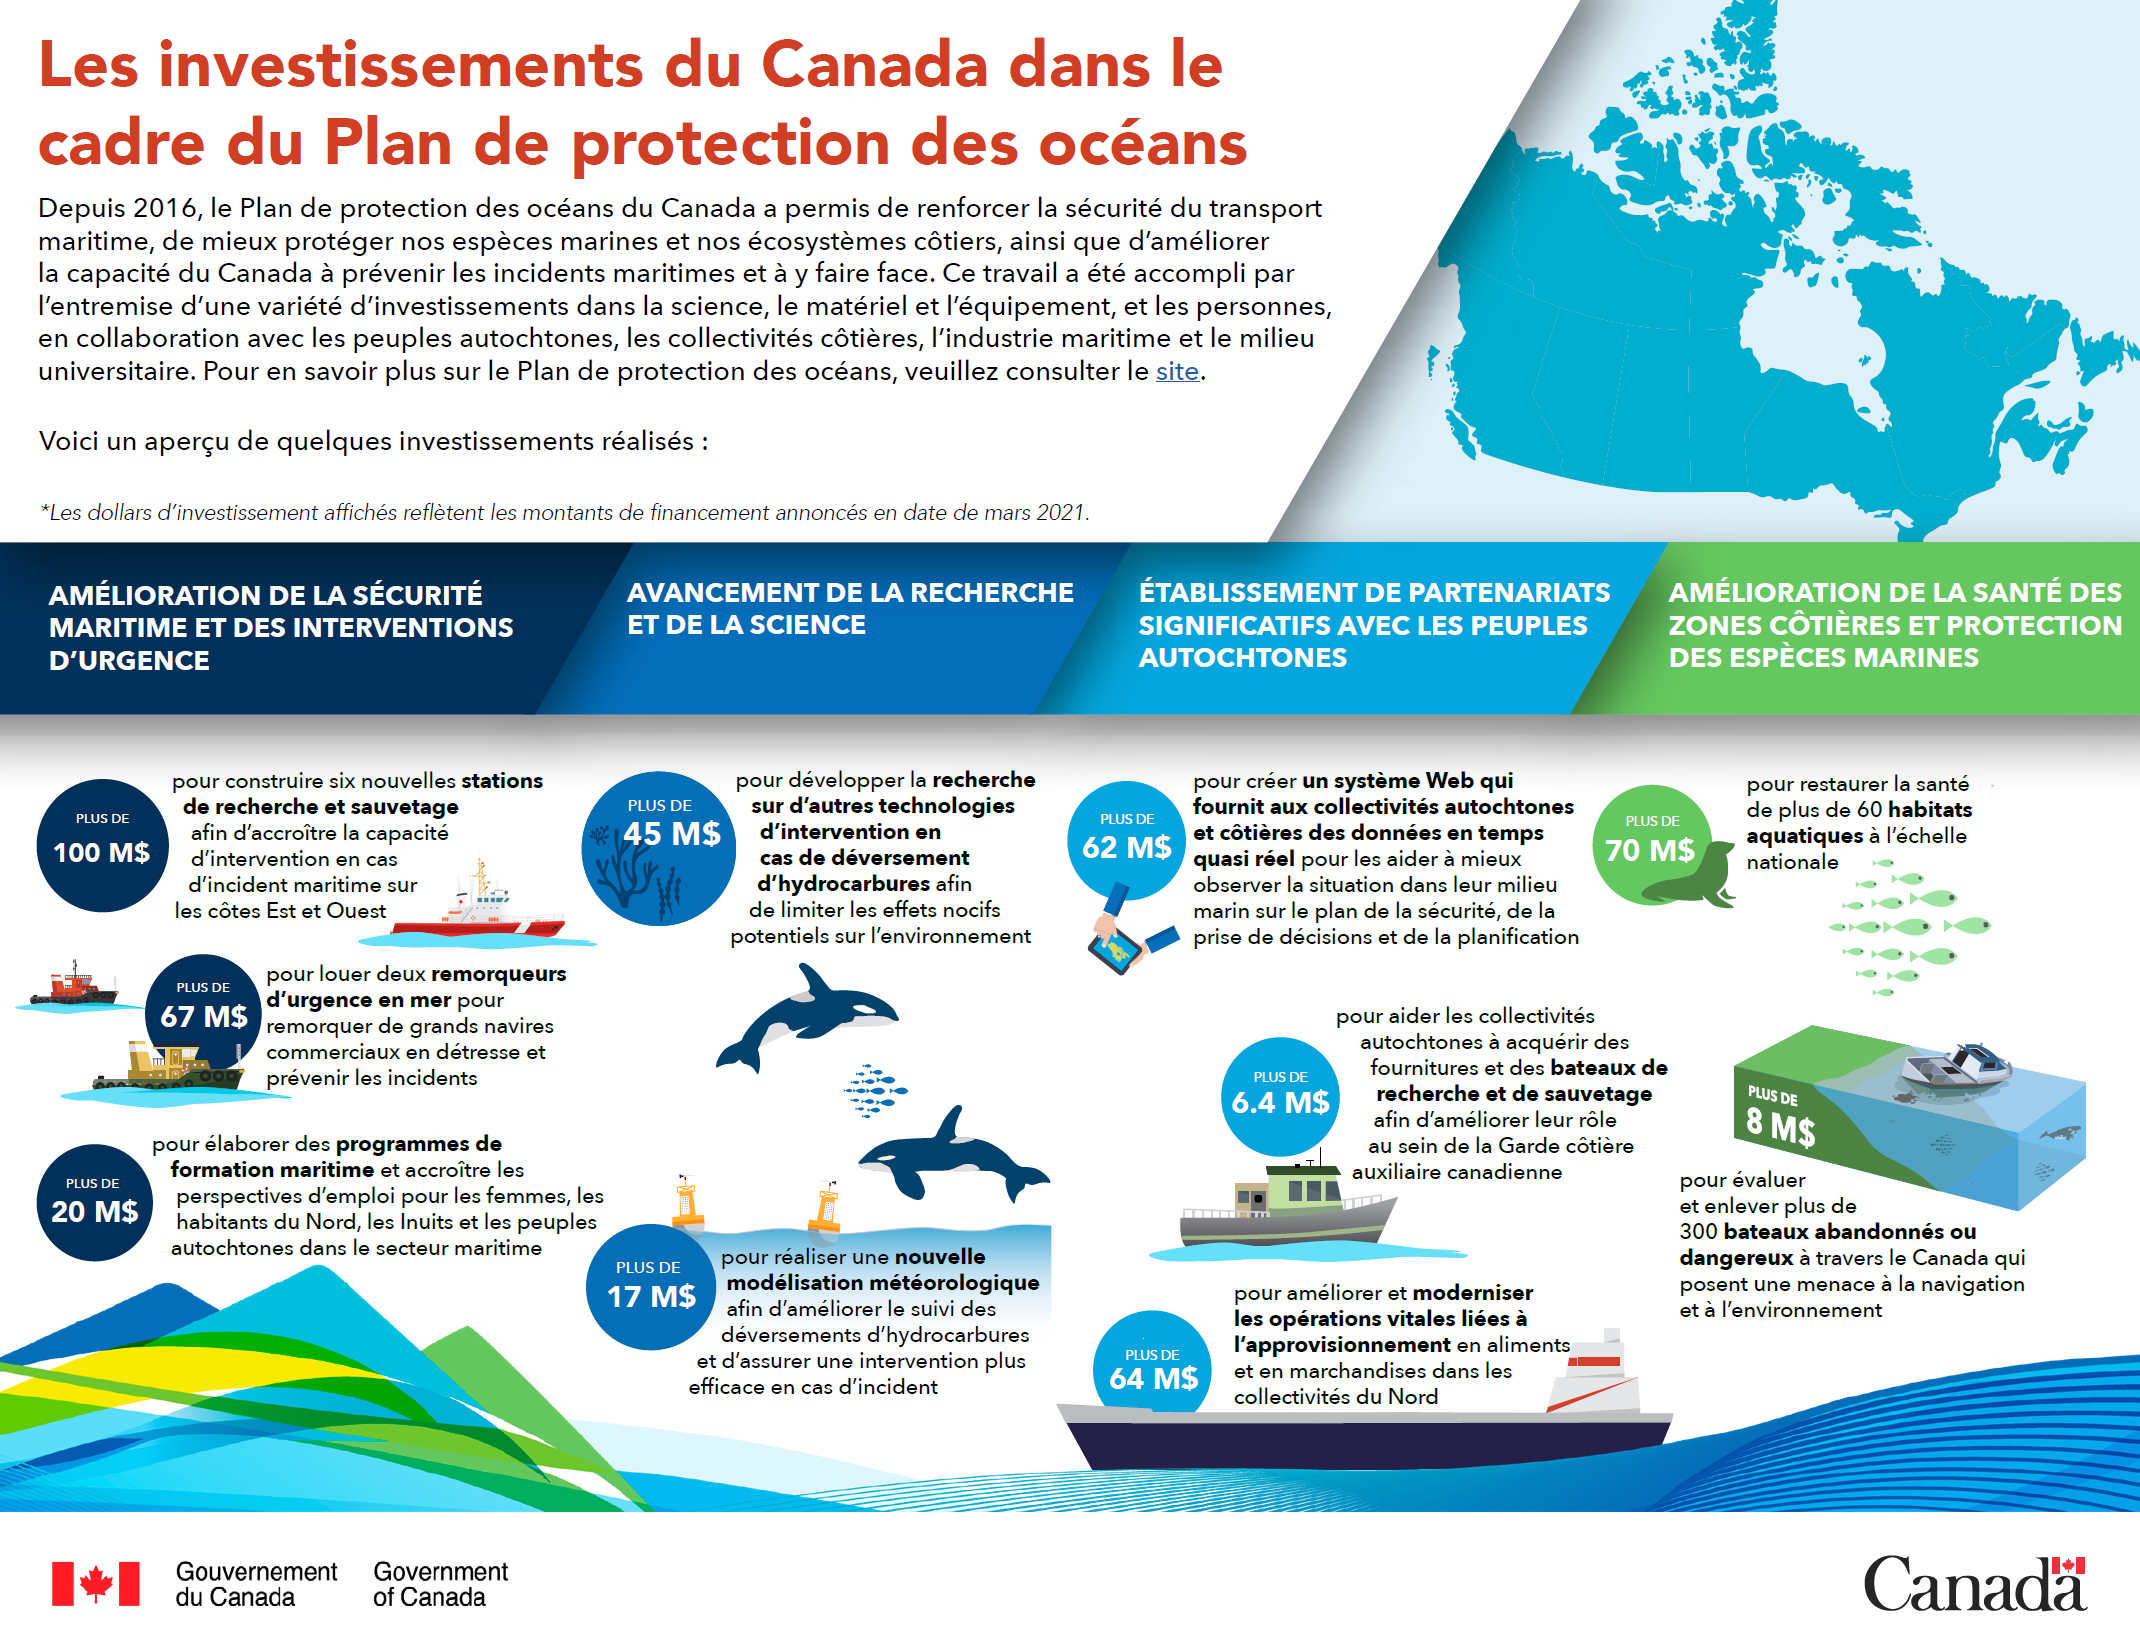 Les investissements du Canada dans le cadre du Plan de protection des océans